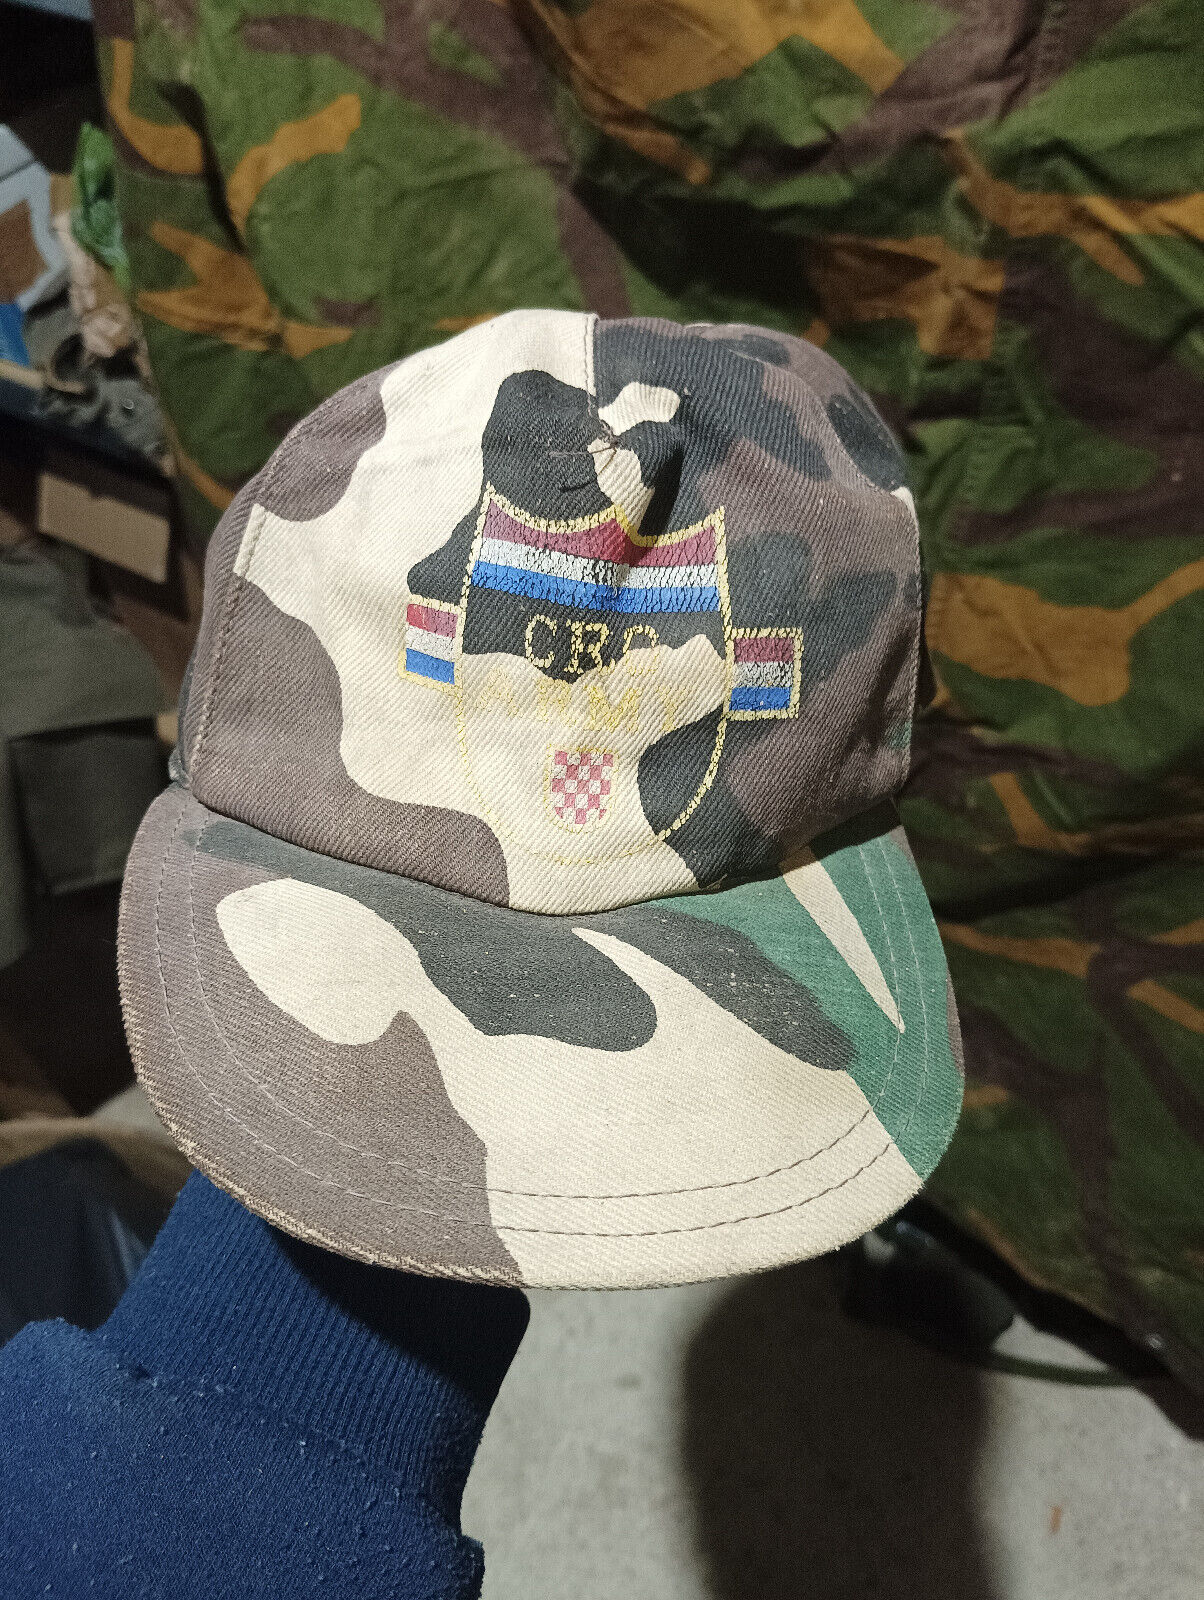 Cro army 1991 baseball cap